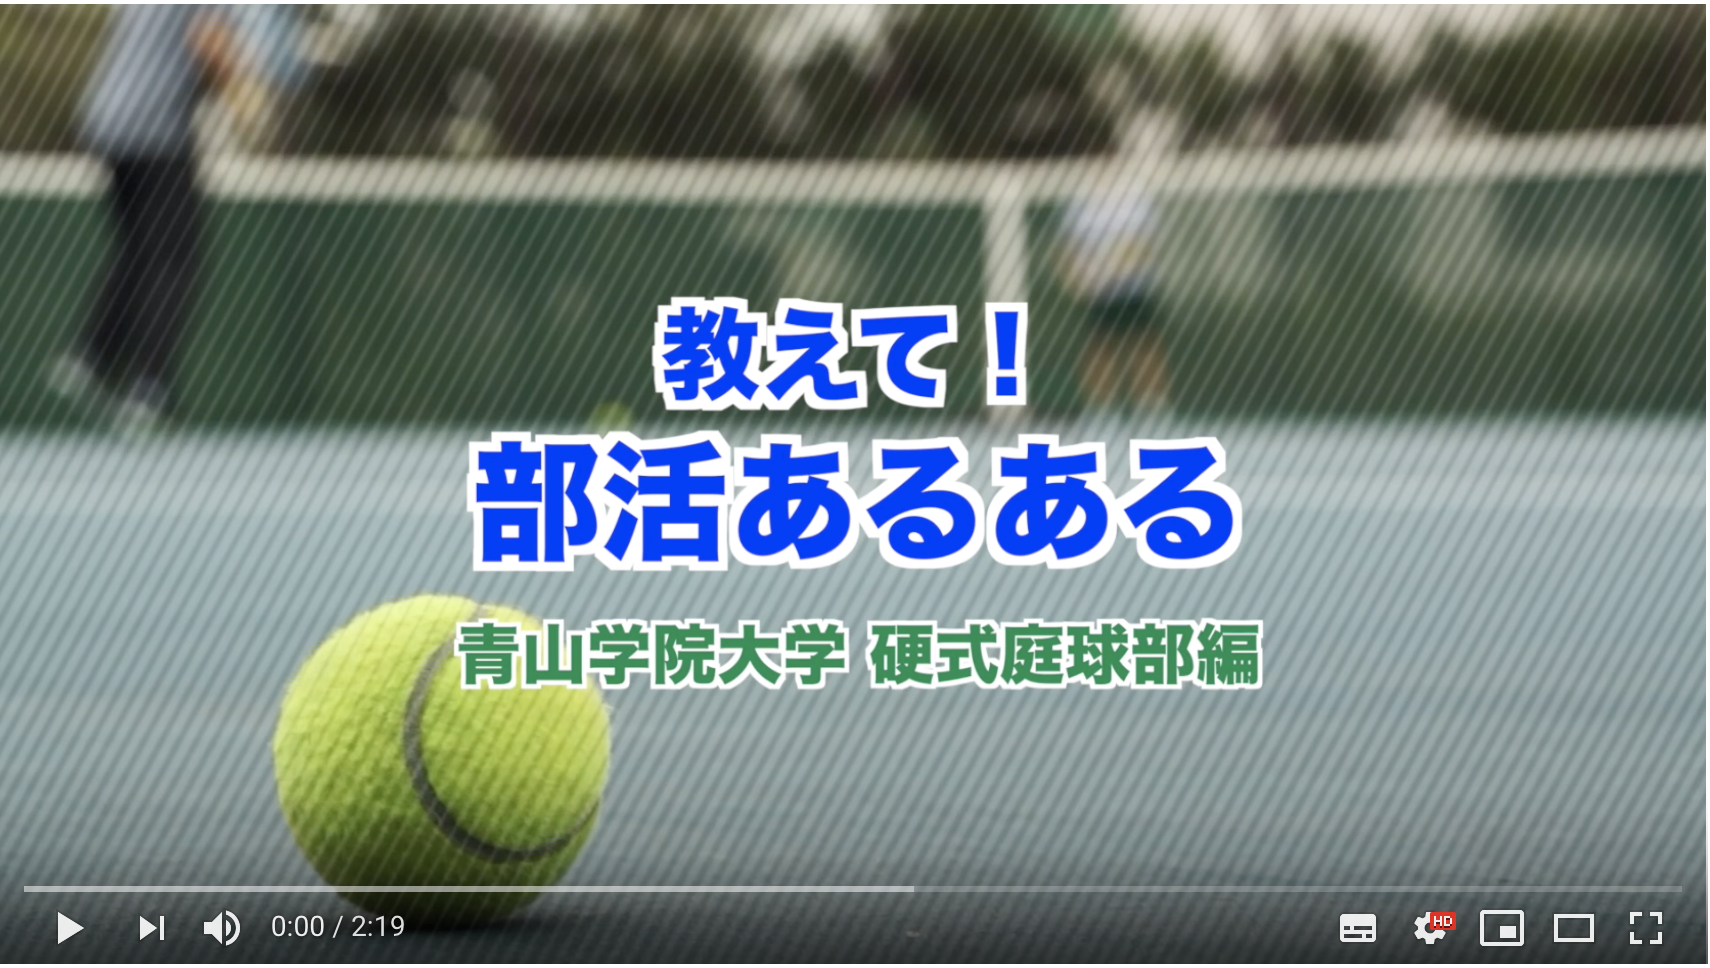 青山学院大学硬式庭球部 硬式テニス部 地の塩 世の光 青山学院大学硬式庭球部の公式サイトです